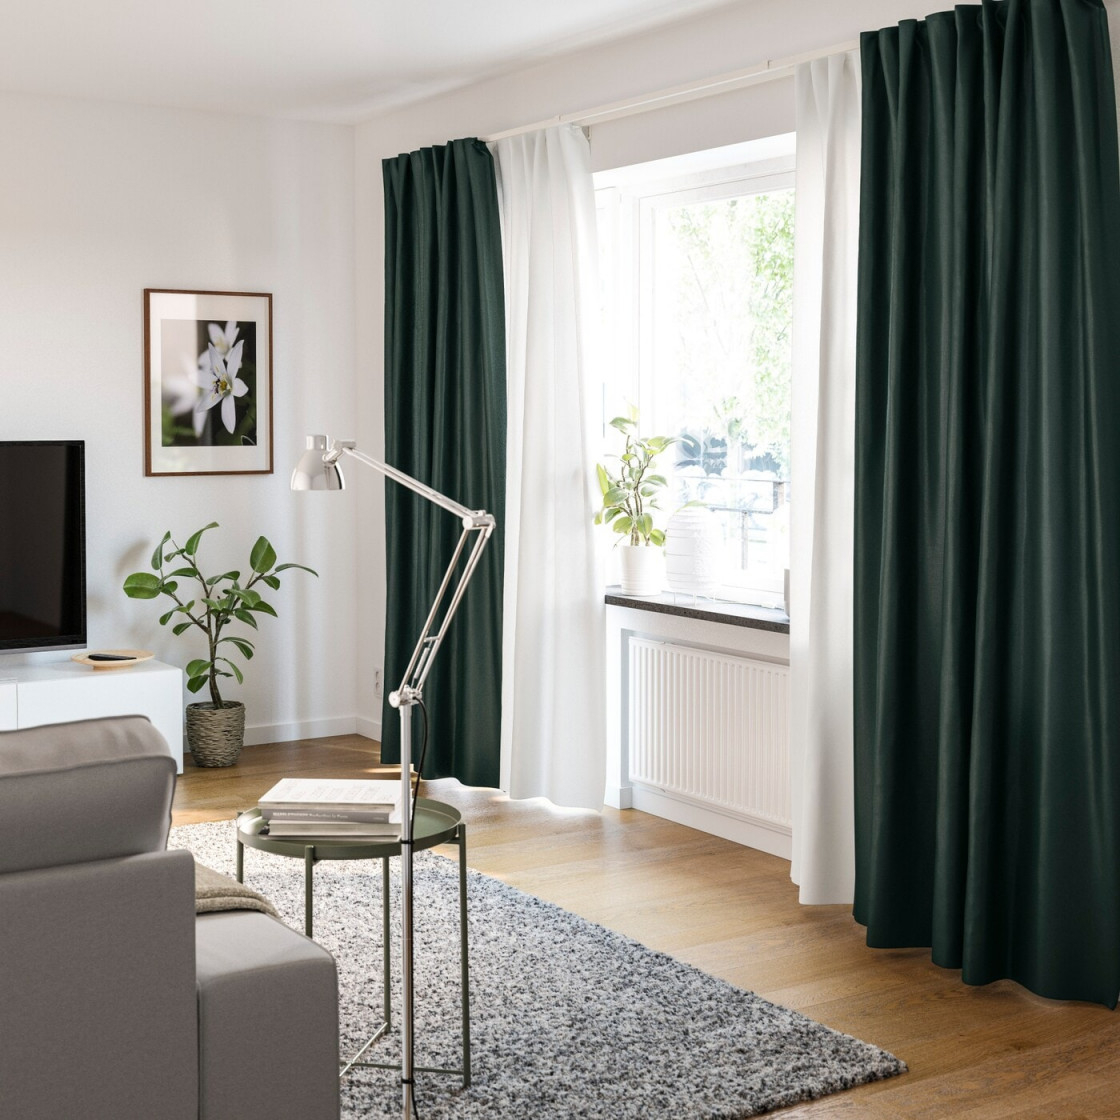 Gardinenideen Inspirationen Für Dein Zuhause  Ikea von Gardinen Wohnzimmer Ideen Bild